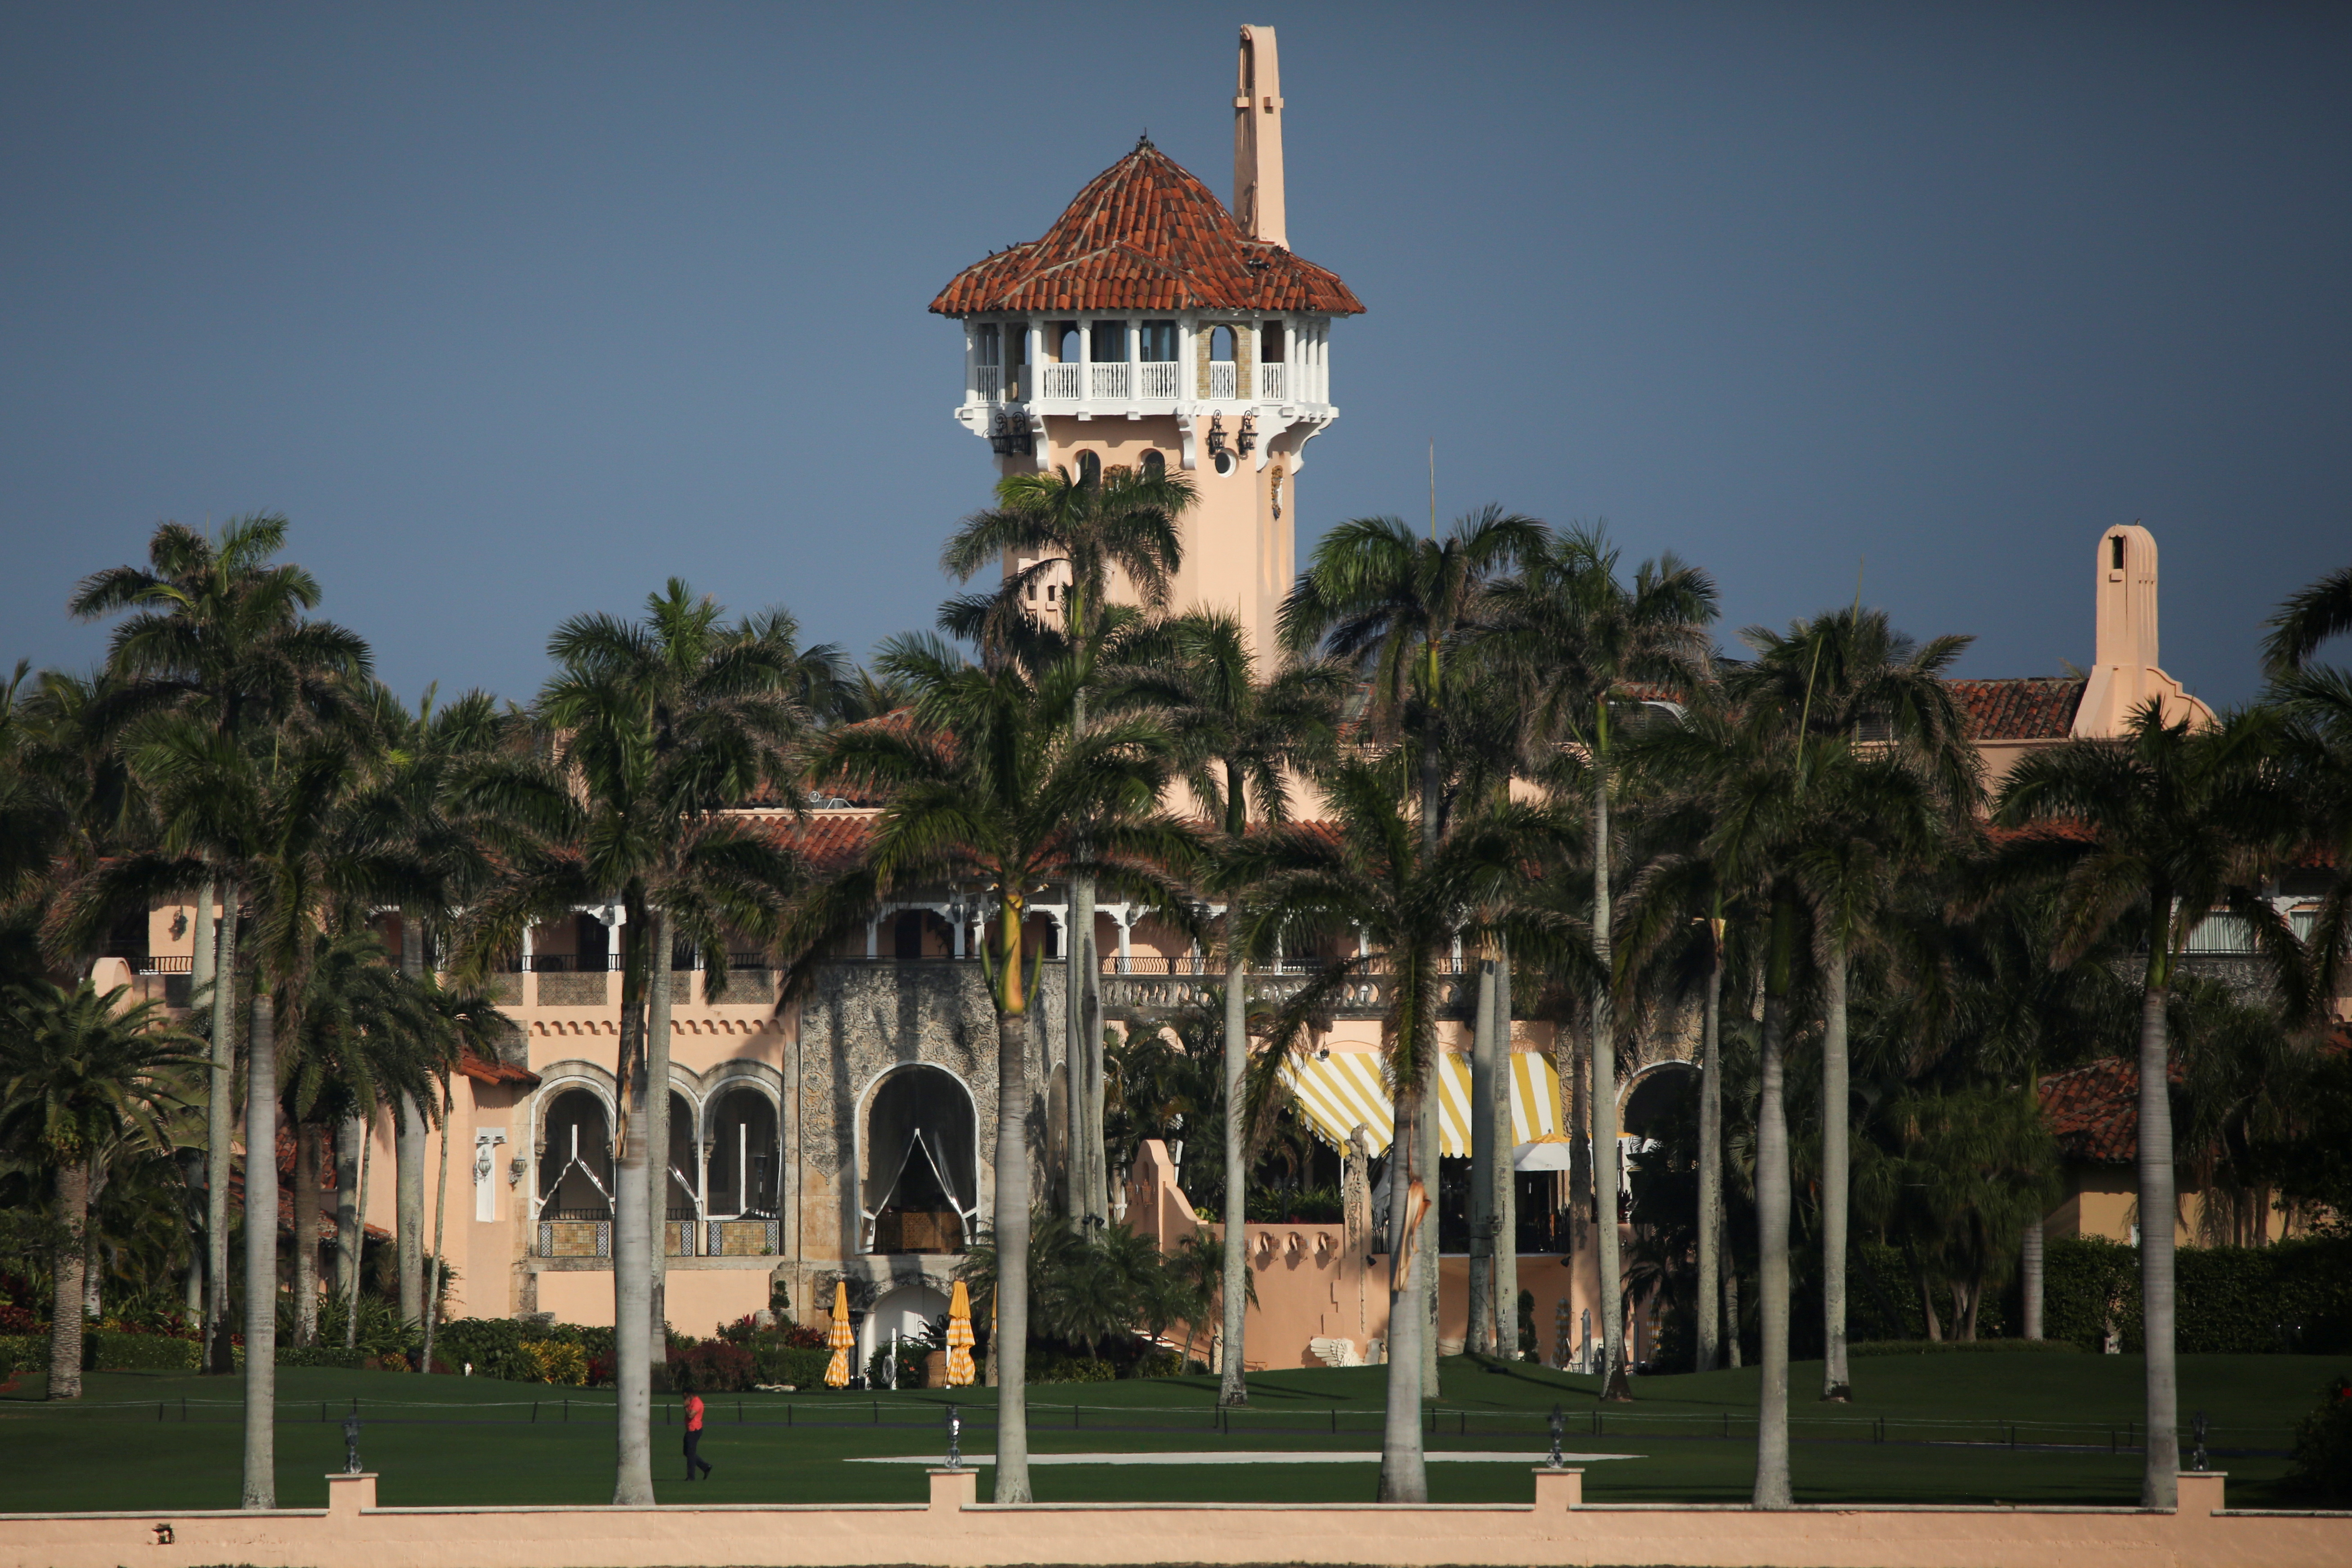 FOTO DE ARCHIVO: El resort Mar-a-Lago del expresidente estadounidense Donald Trump en Palm Beach, Florida, EE. UU., el 8 de febrero de 2021. REUTERS/Marco Bello/File Photo